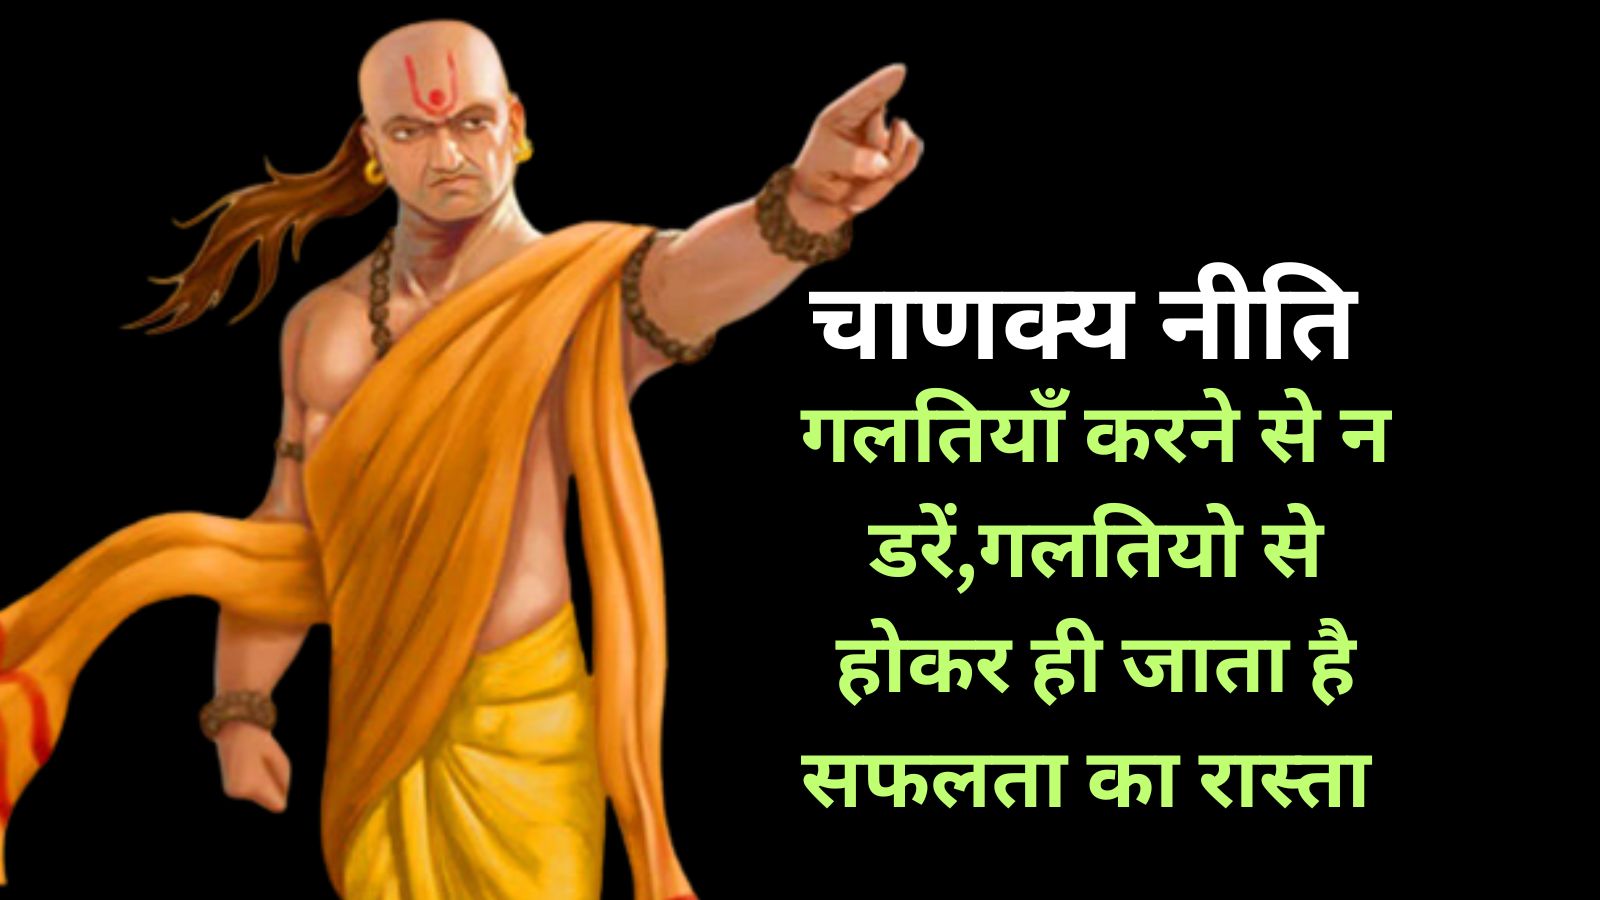 Chanakya Niti:गलतियाँ करने से न डरें,गलतियो से होकर ही जाता है सफलता का रास्ता